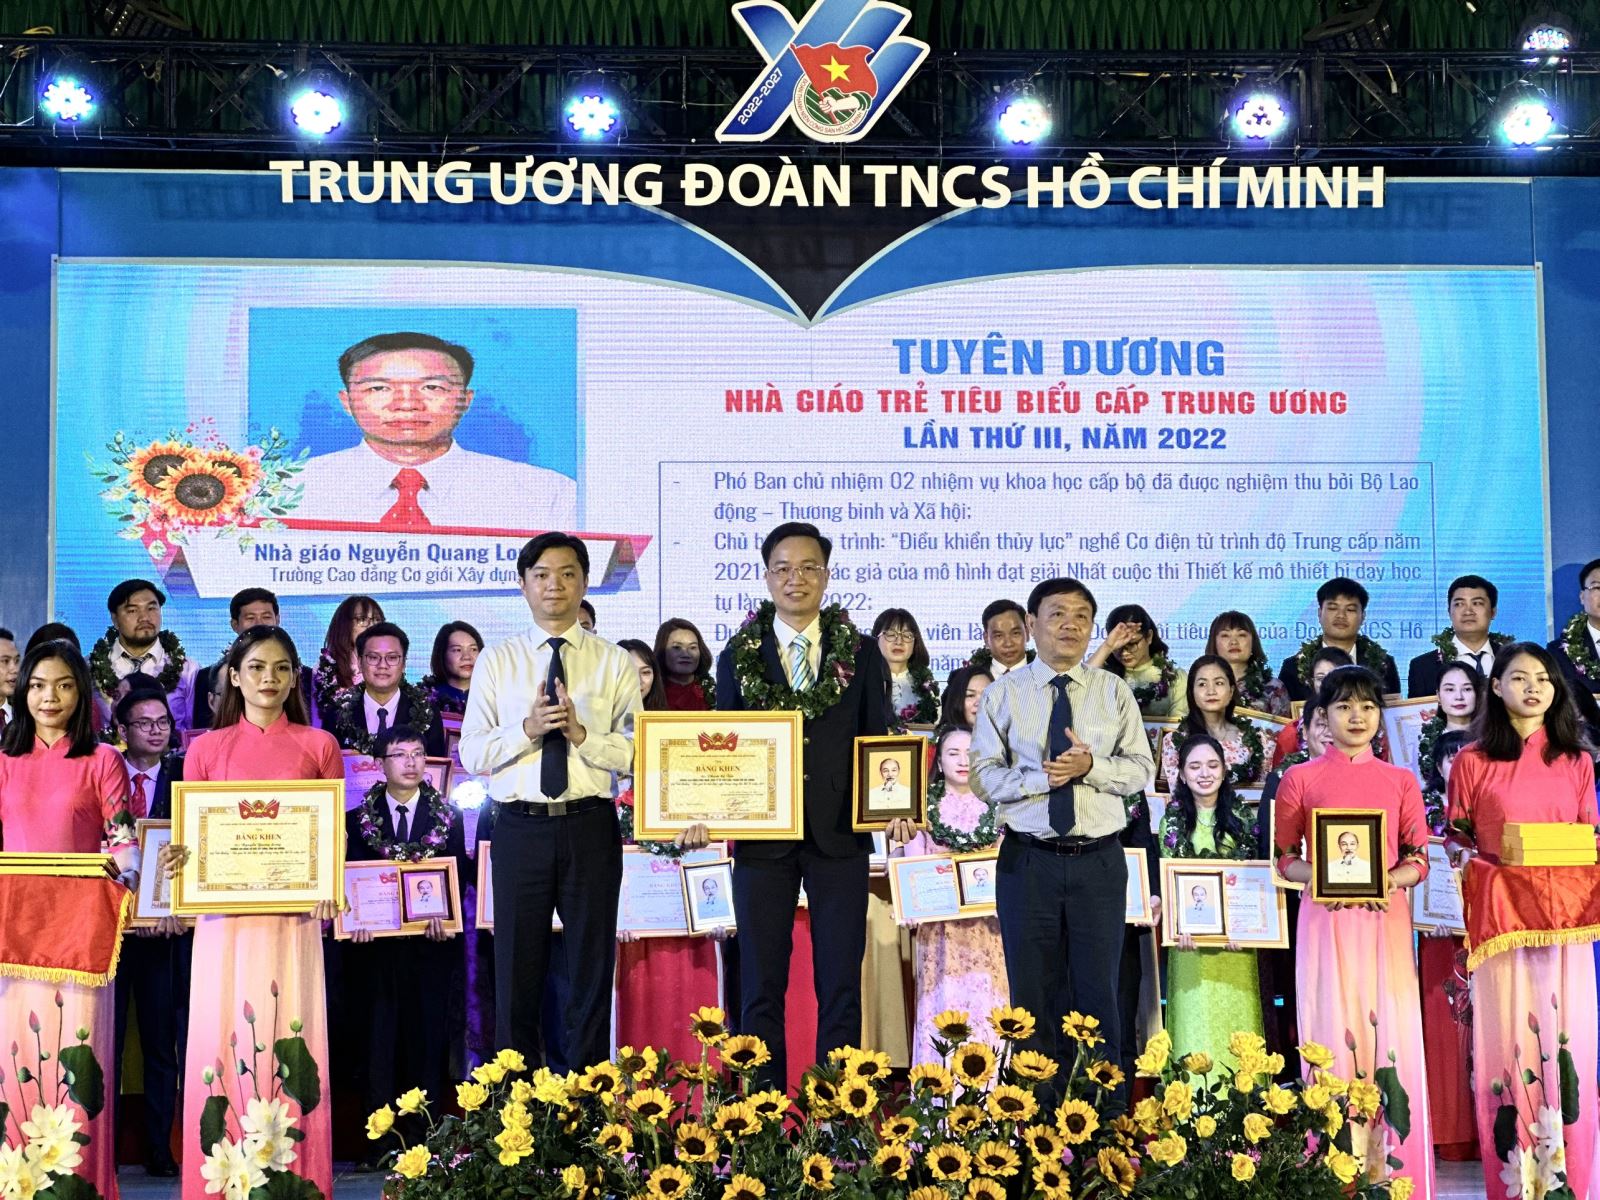 Thầy giáo Nguyễn Quang Long - giảng viên trường Cao đẳng Cơ giới Xây dựng đạt giải thưởng “Nhà giáo trẻ tiêu biểu”cấp Trung ương lần thứ III, năm 2022